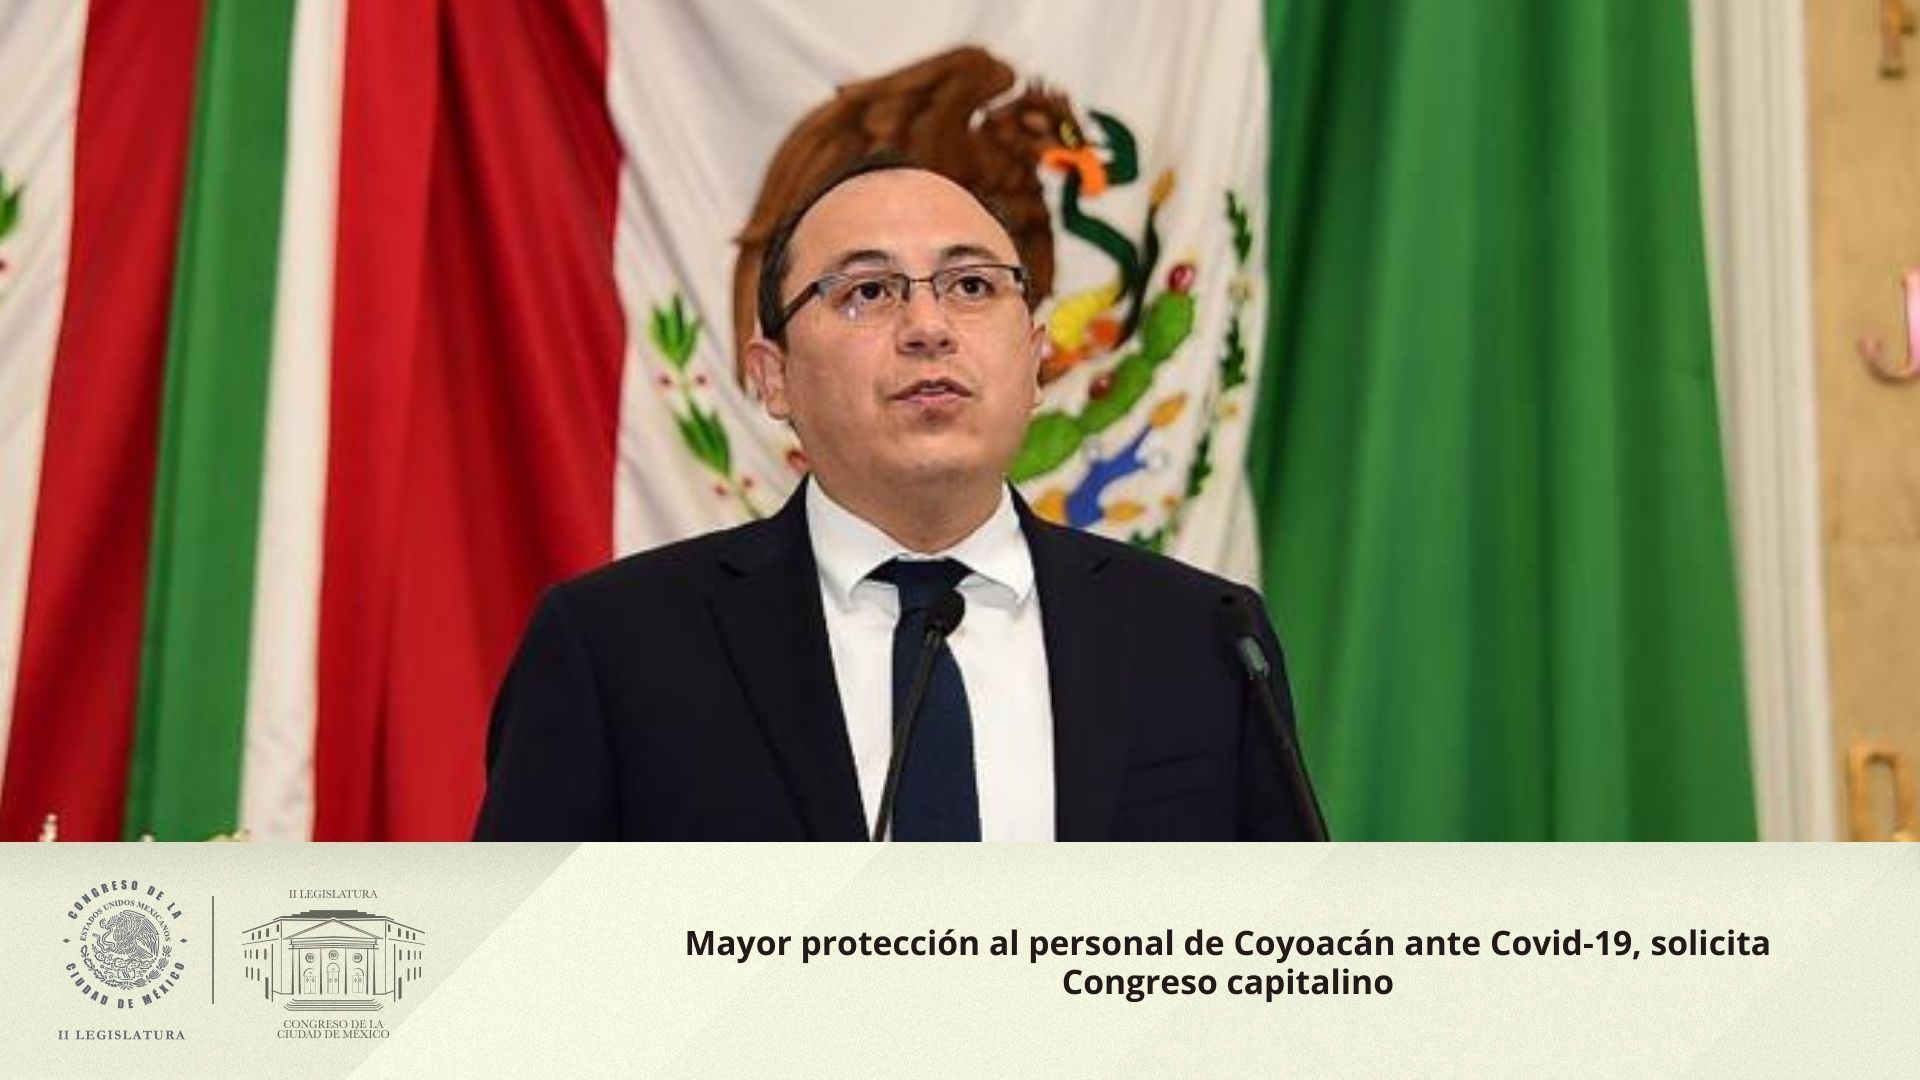 Mayor protección al personal de Coyoacán ante Covid-19, solicita Congreso capitalino